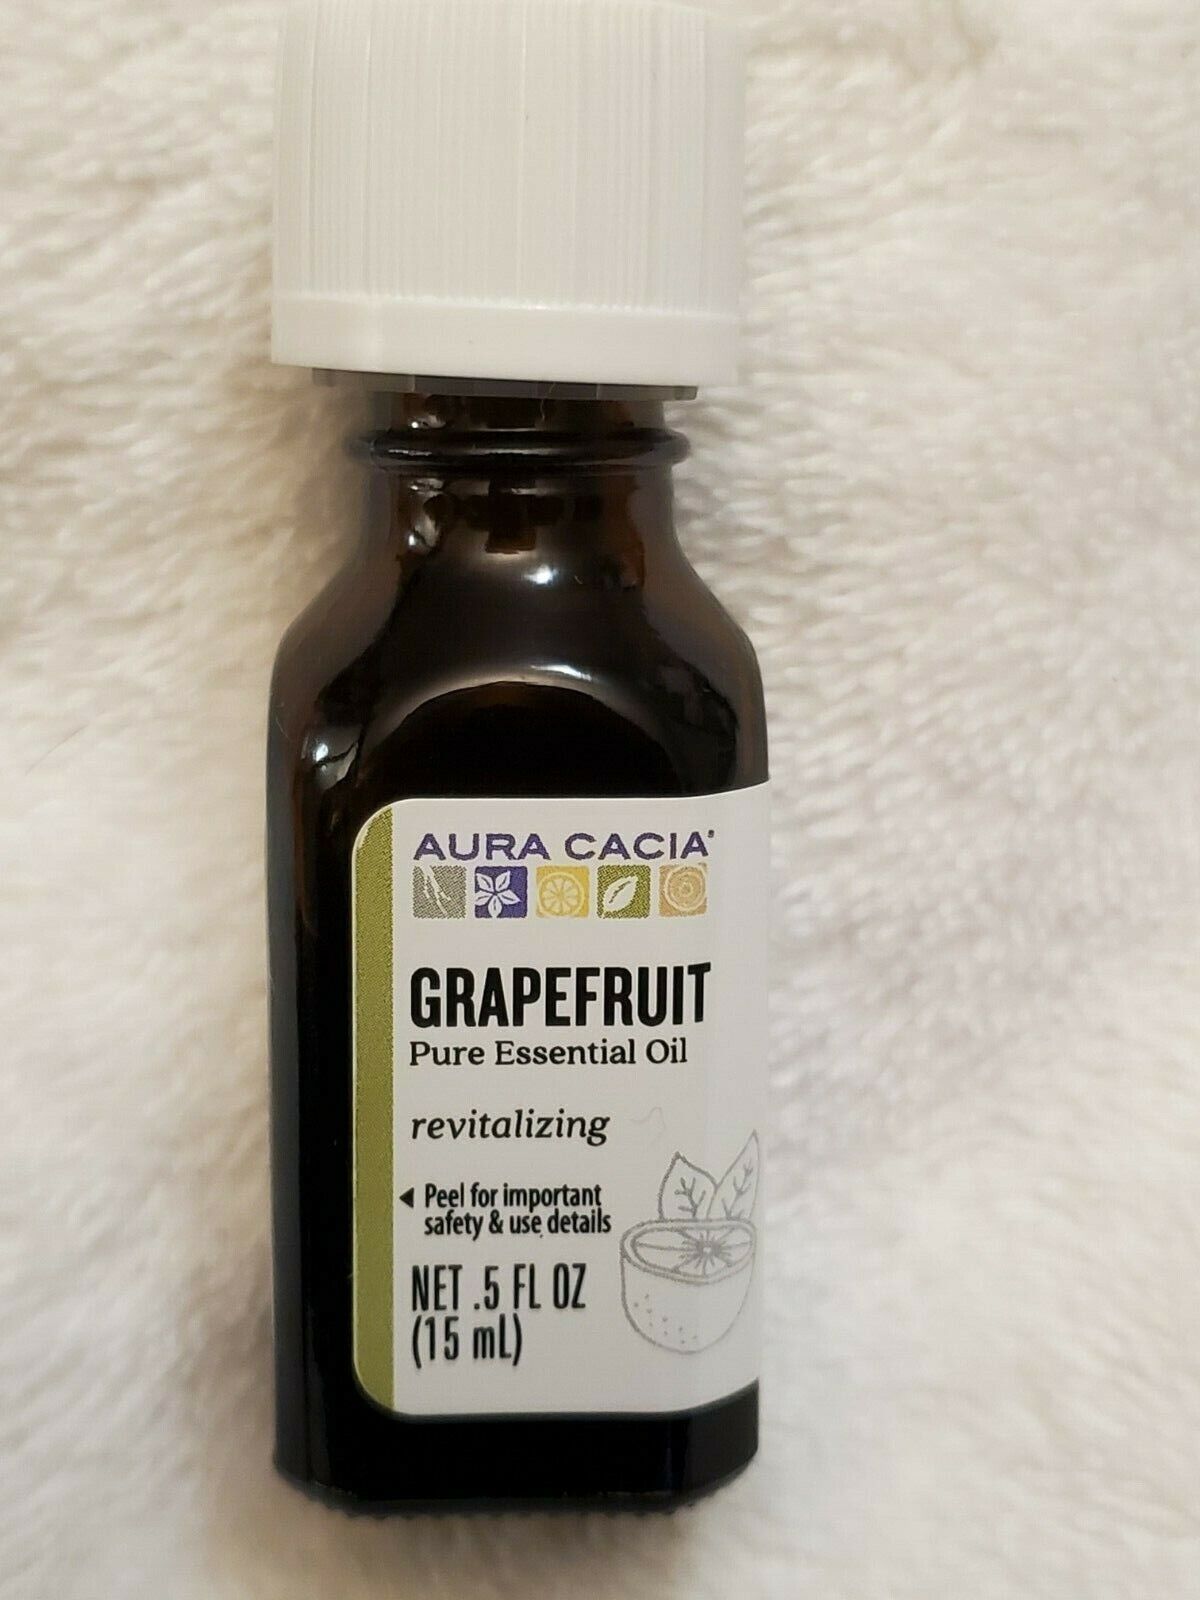 Aura Cacia Grapefruit Pure Essential Oil 0.5 fl oz (15 mL) Revitalizing